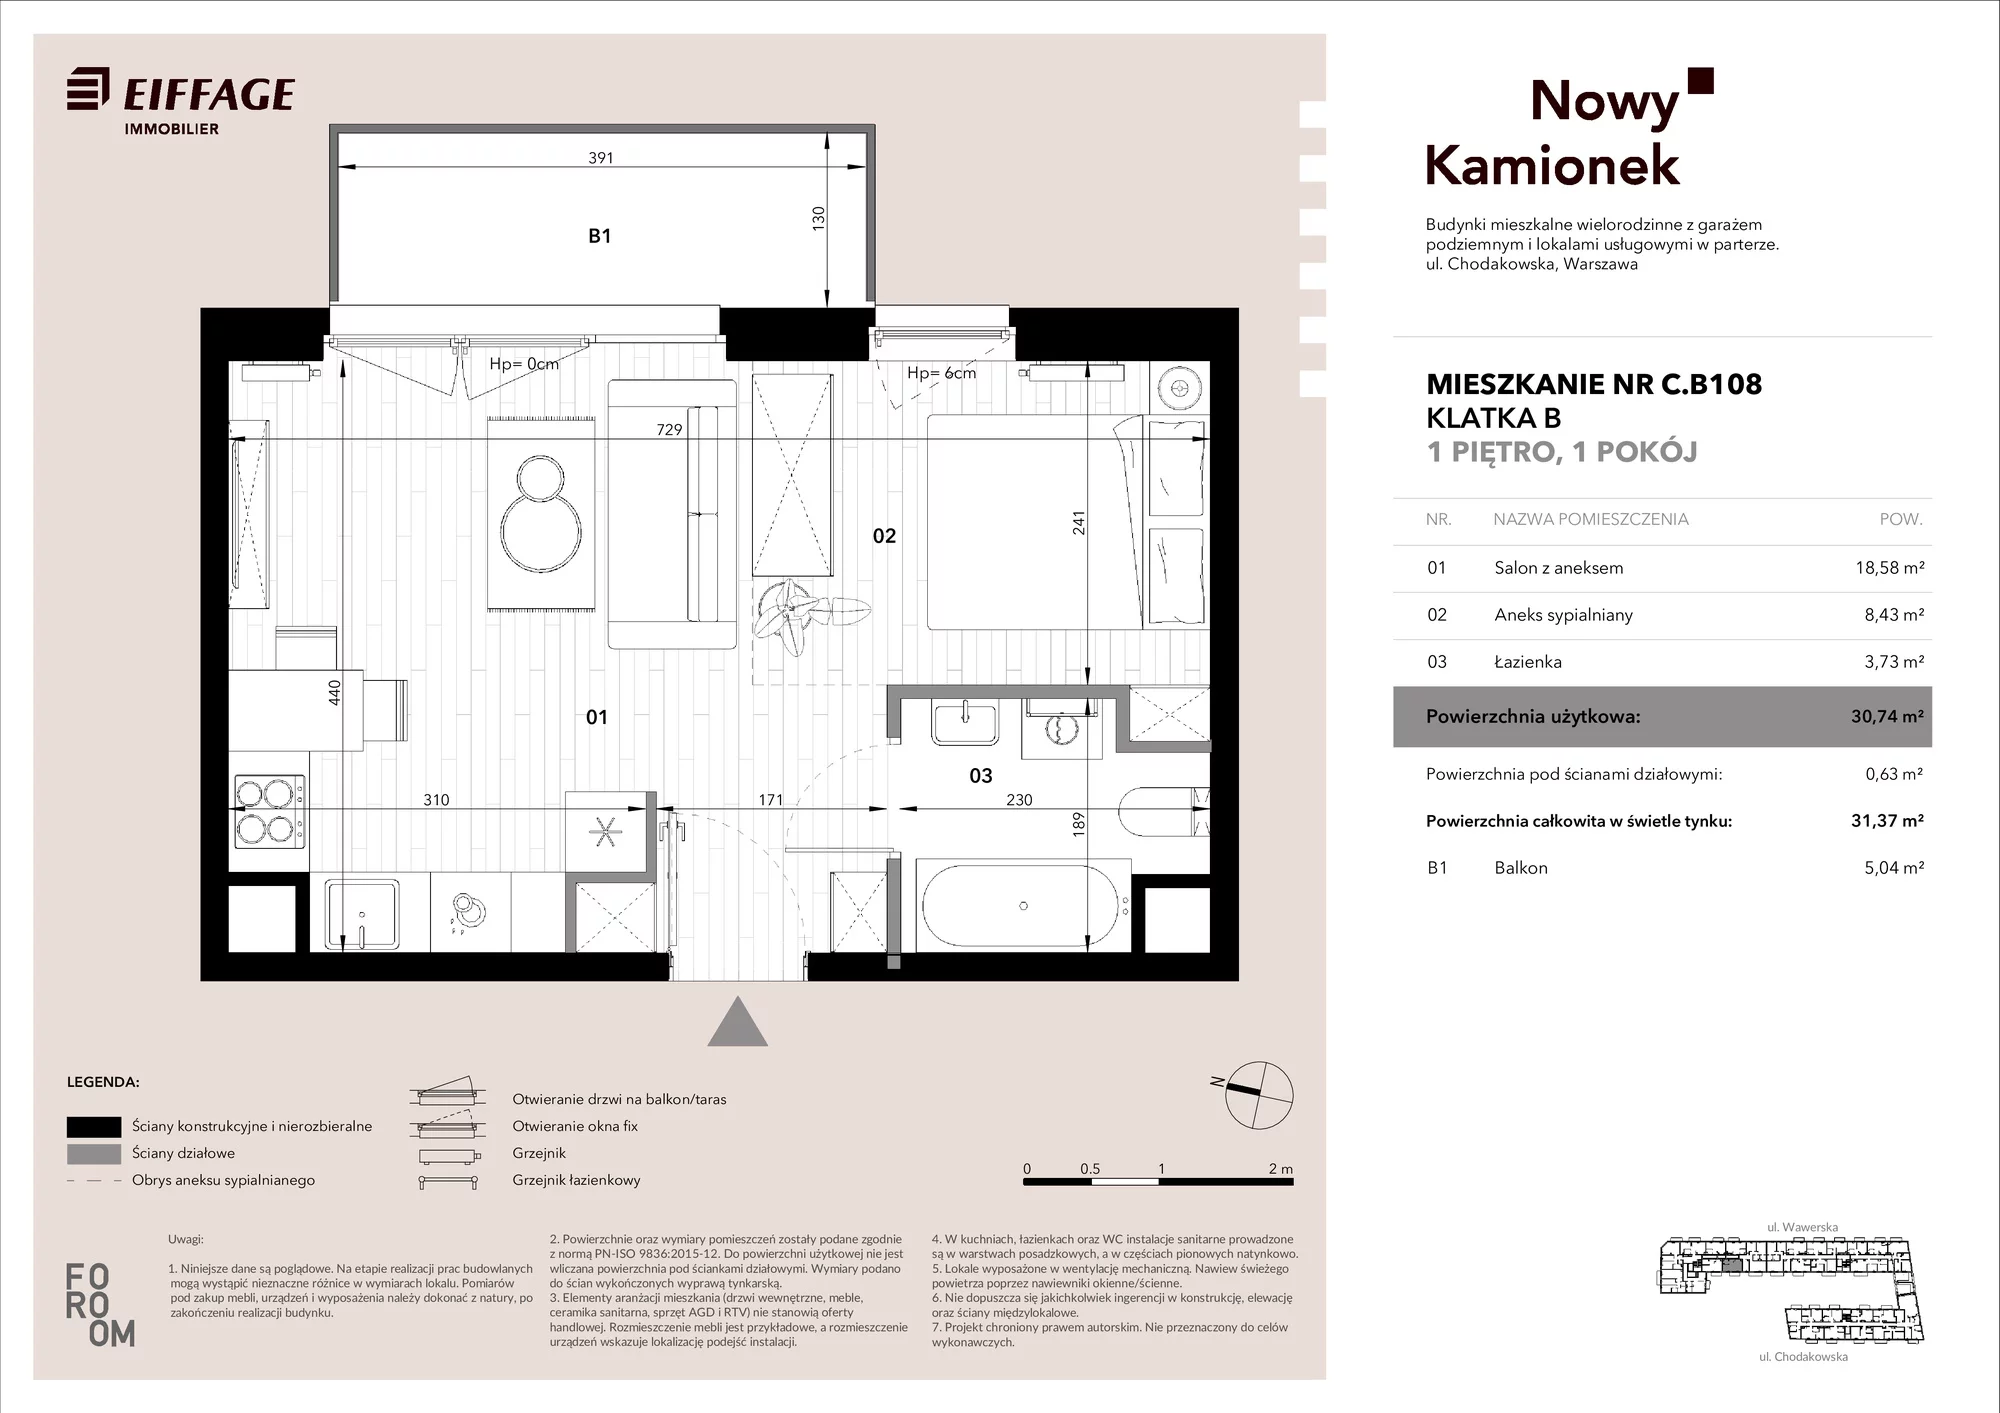 Mieszkanie 30,74 m², piętro 1, oferta nr C.B108, Nowy Kamionek, Warszawa, Praga Południe, Kamionek, ul. Chodakowska